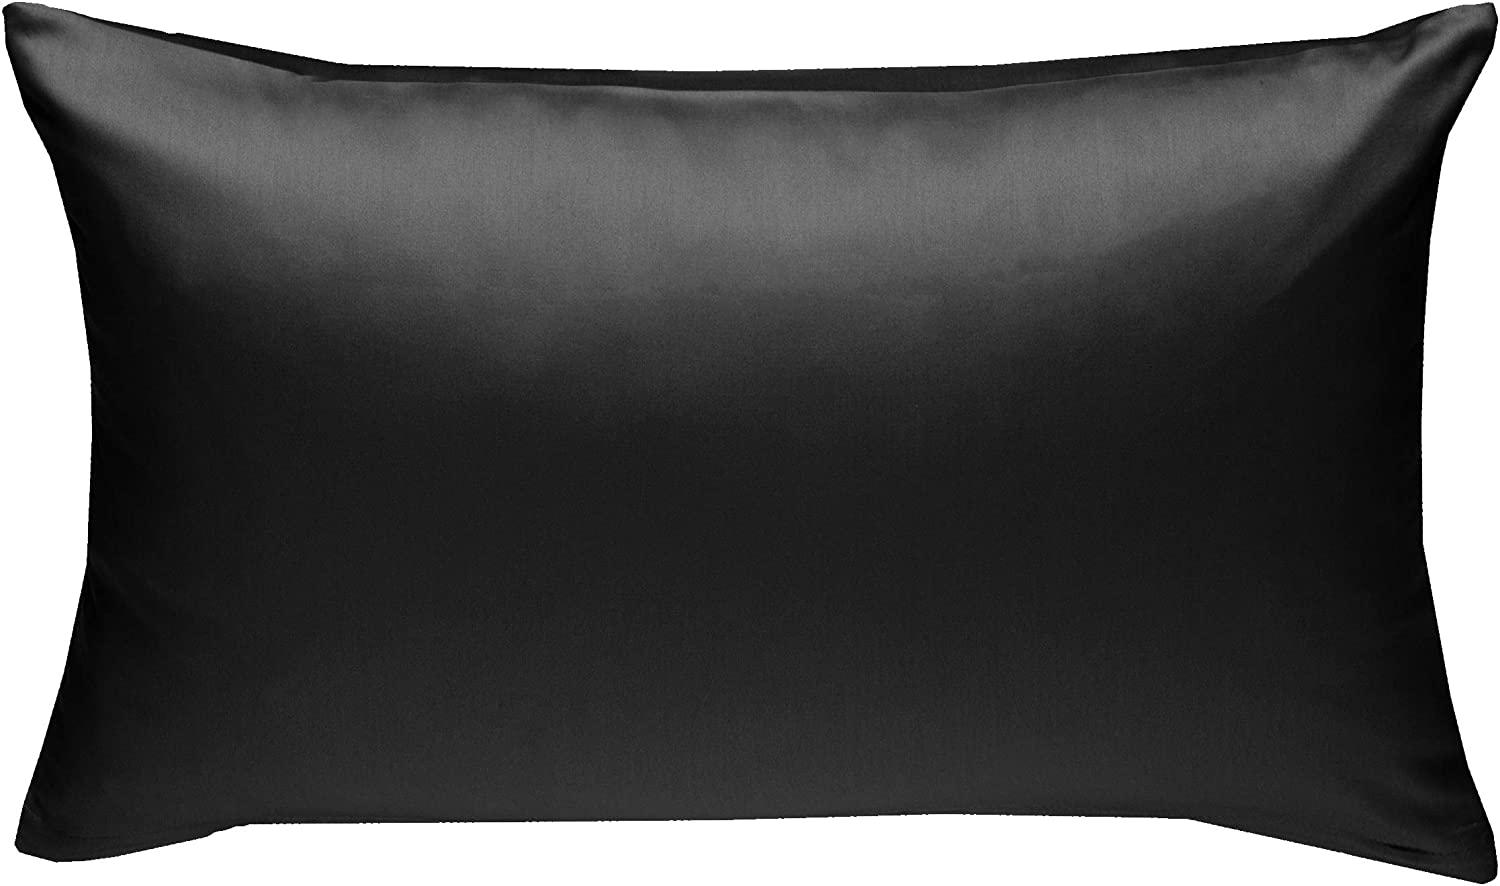 Bettwaesche-mit-Stil Mako-Satin / Baumwollsatin Bettwäsche uni / einfarbig schwarz Kissenbezug 50x70 cm Bild 1